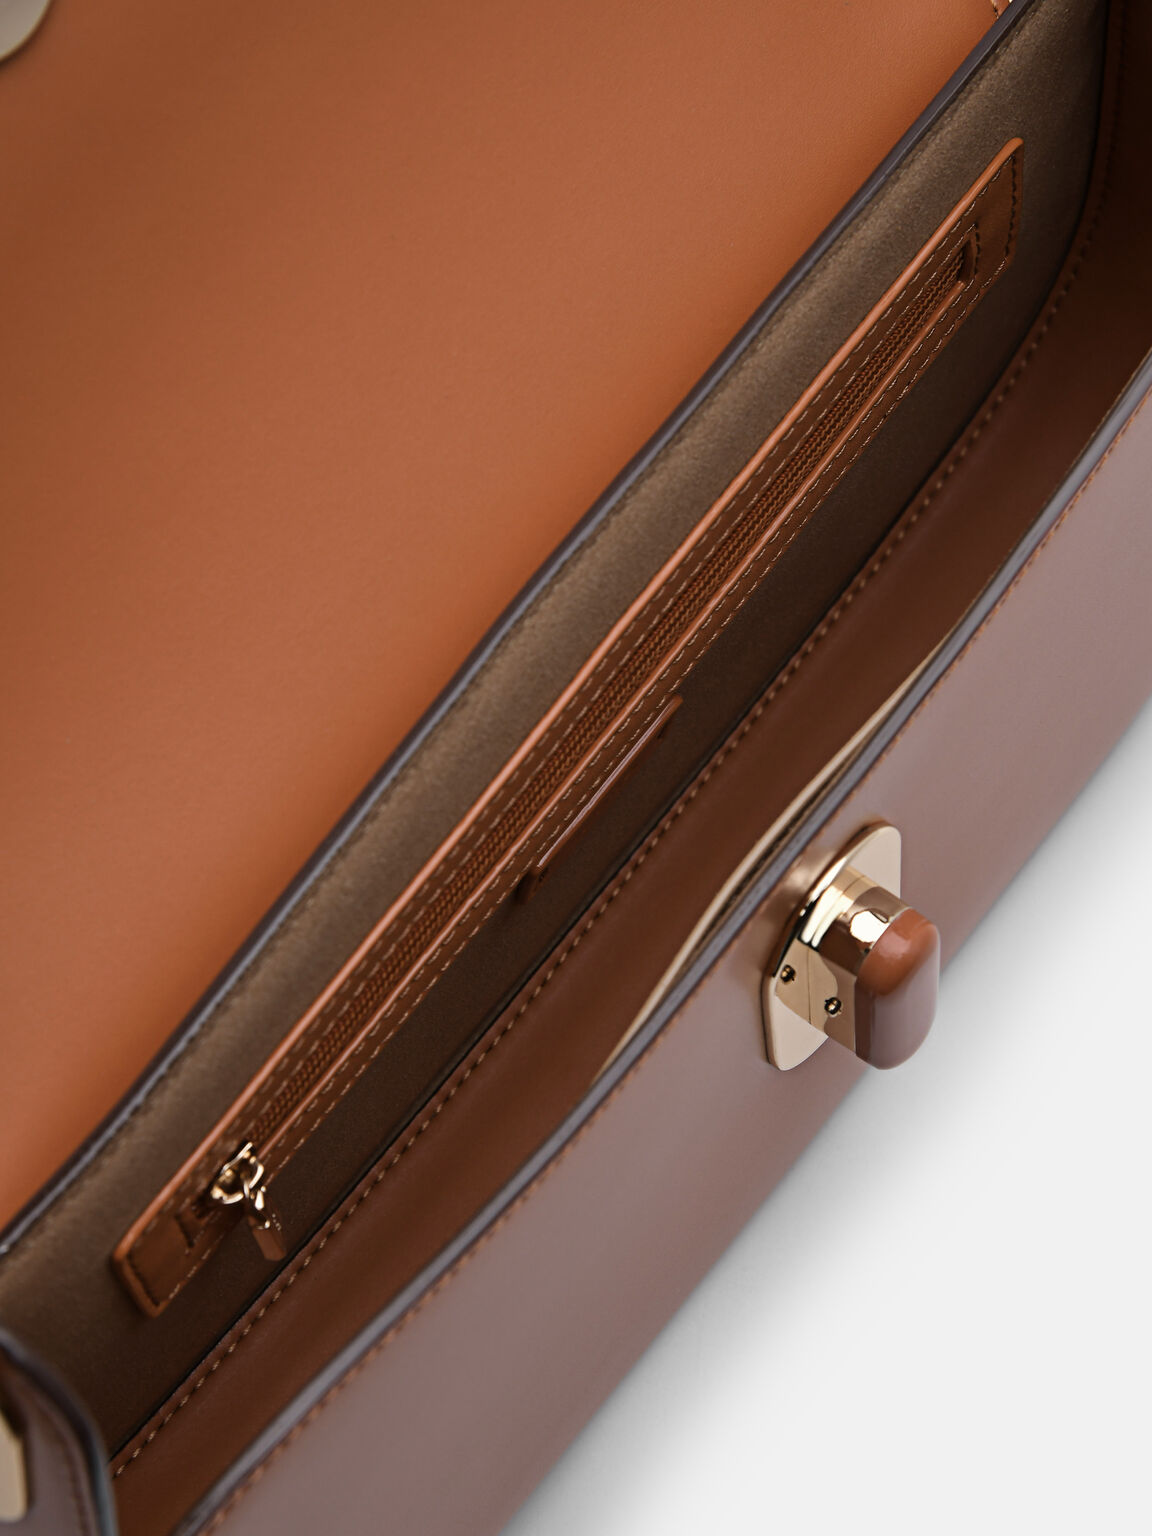 PEDRO Studio Rift Leather Shoulder Bag, Orange, hi-res